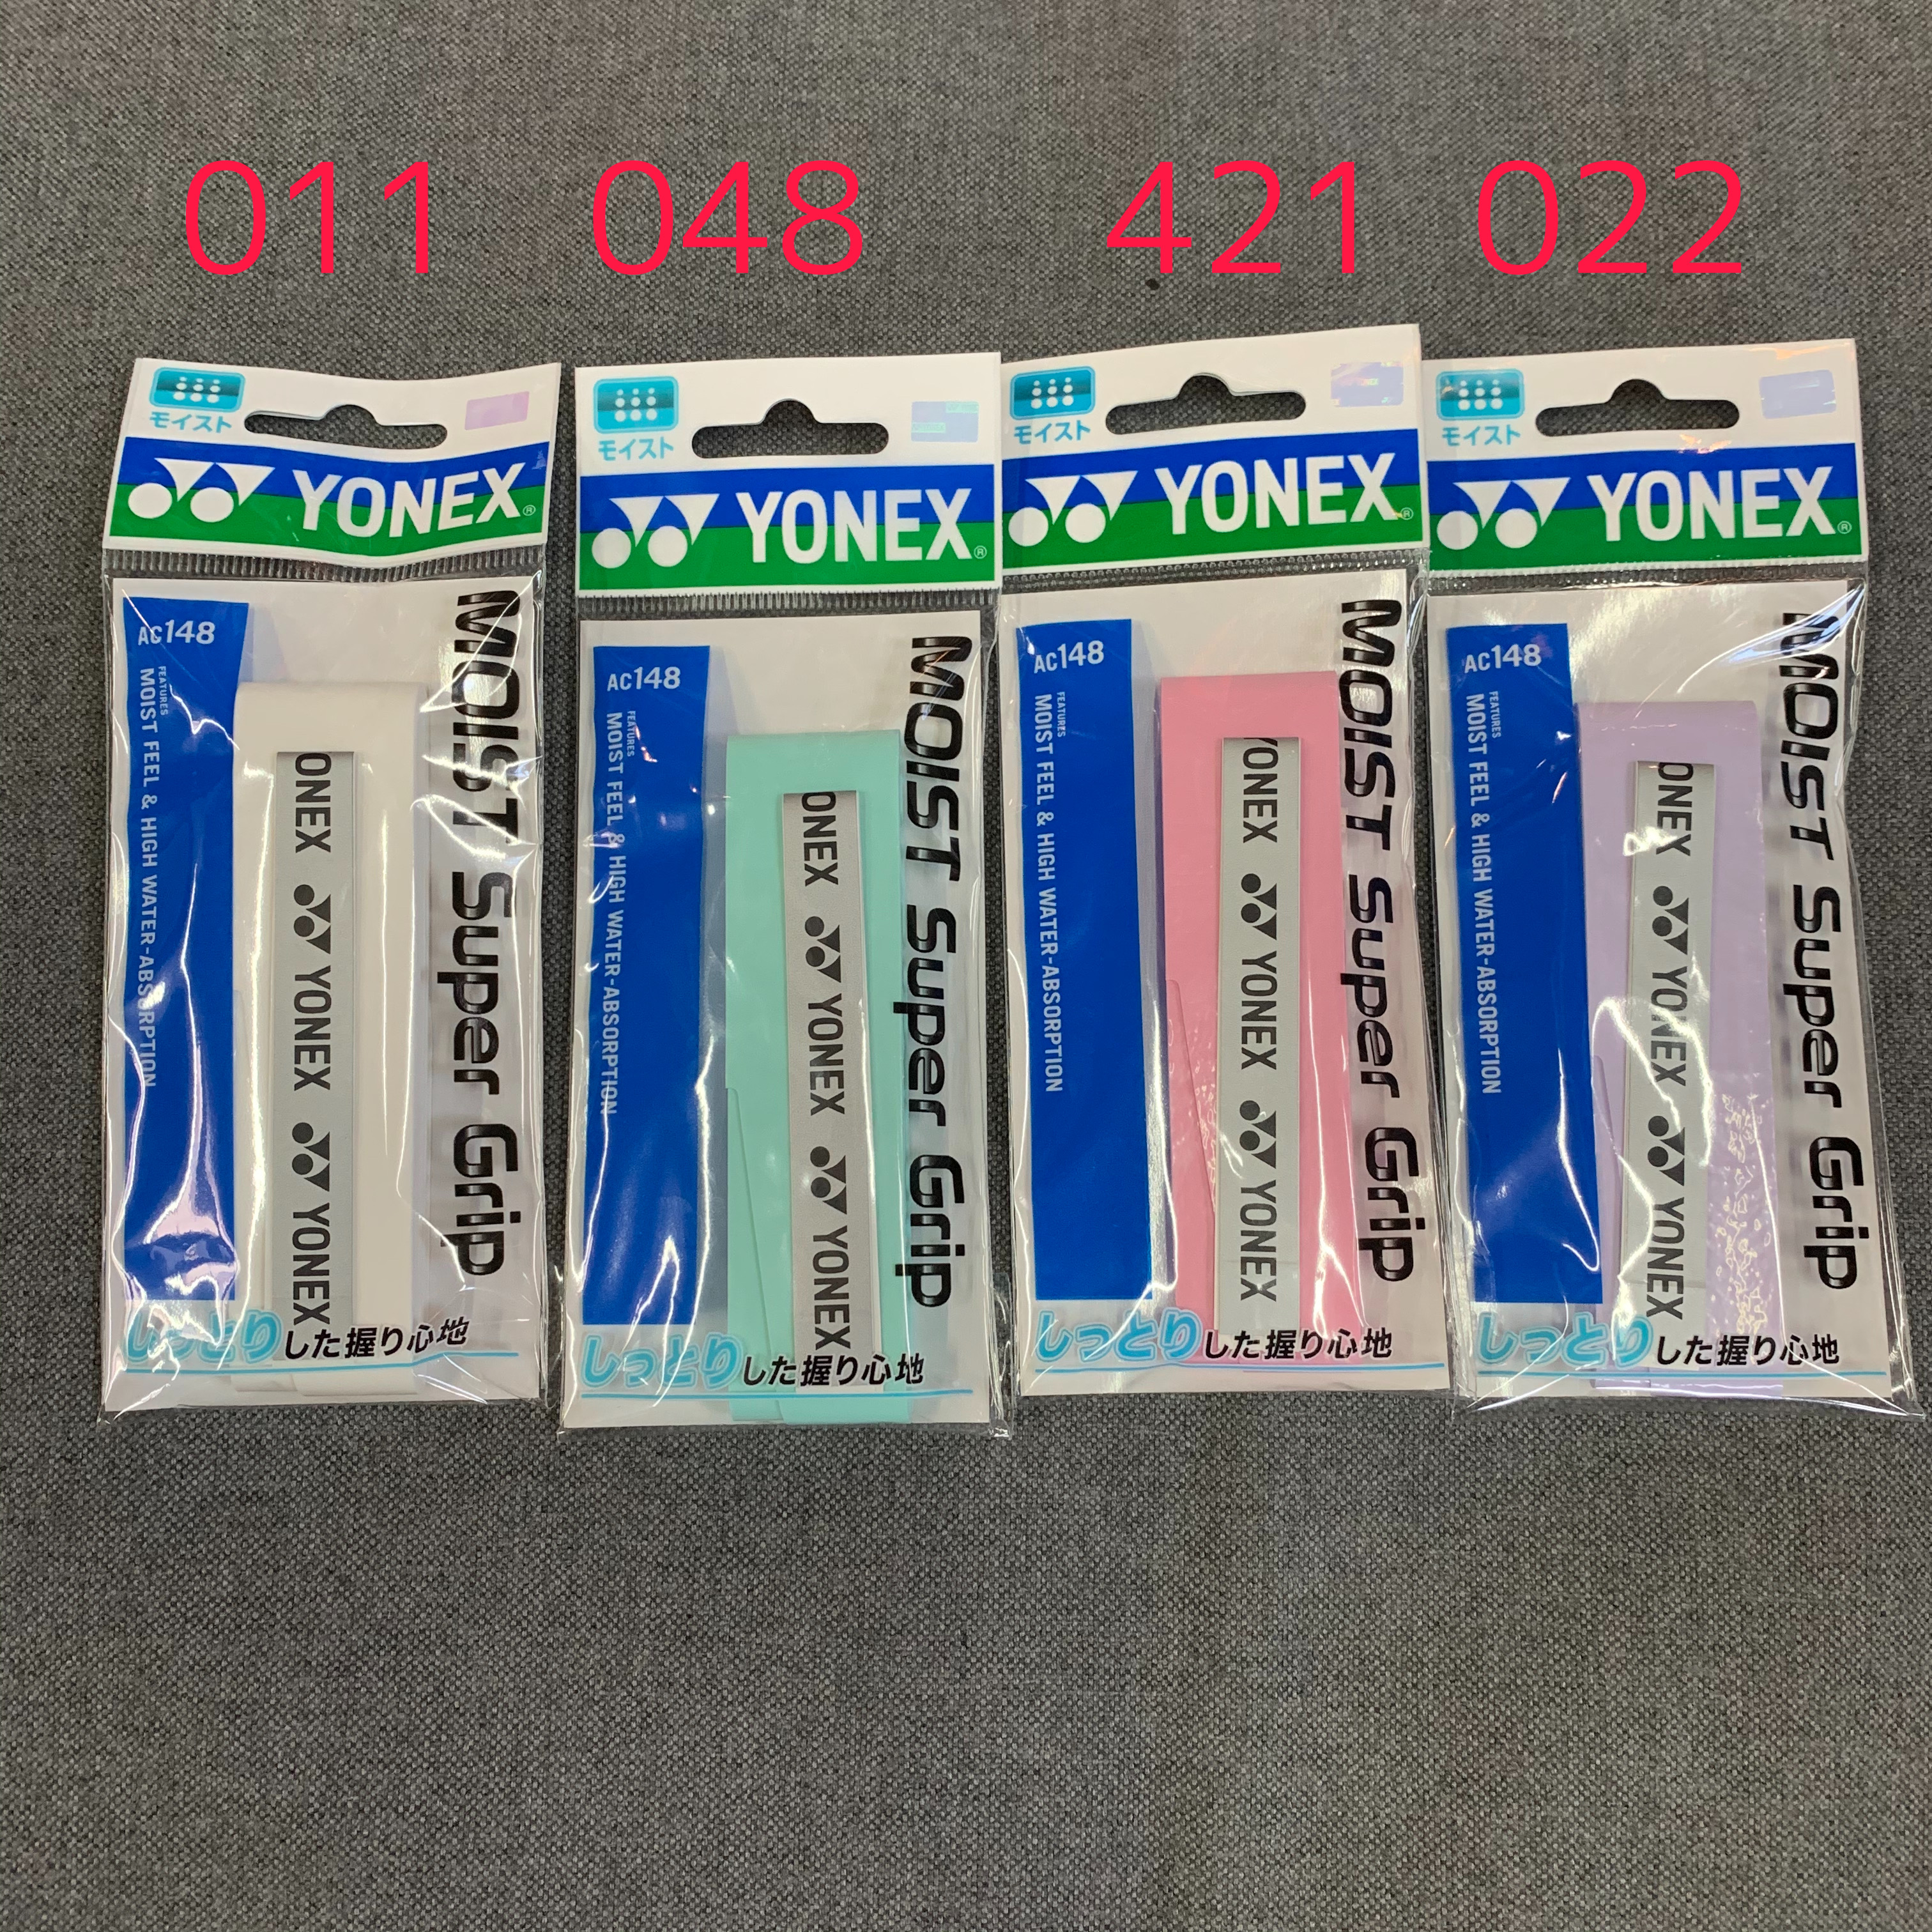 テニスショップラリー / YONEX(ヨネックス) モイストスーパーグリップ AC148(1本入)【ゆうパケットOK】